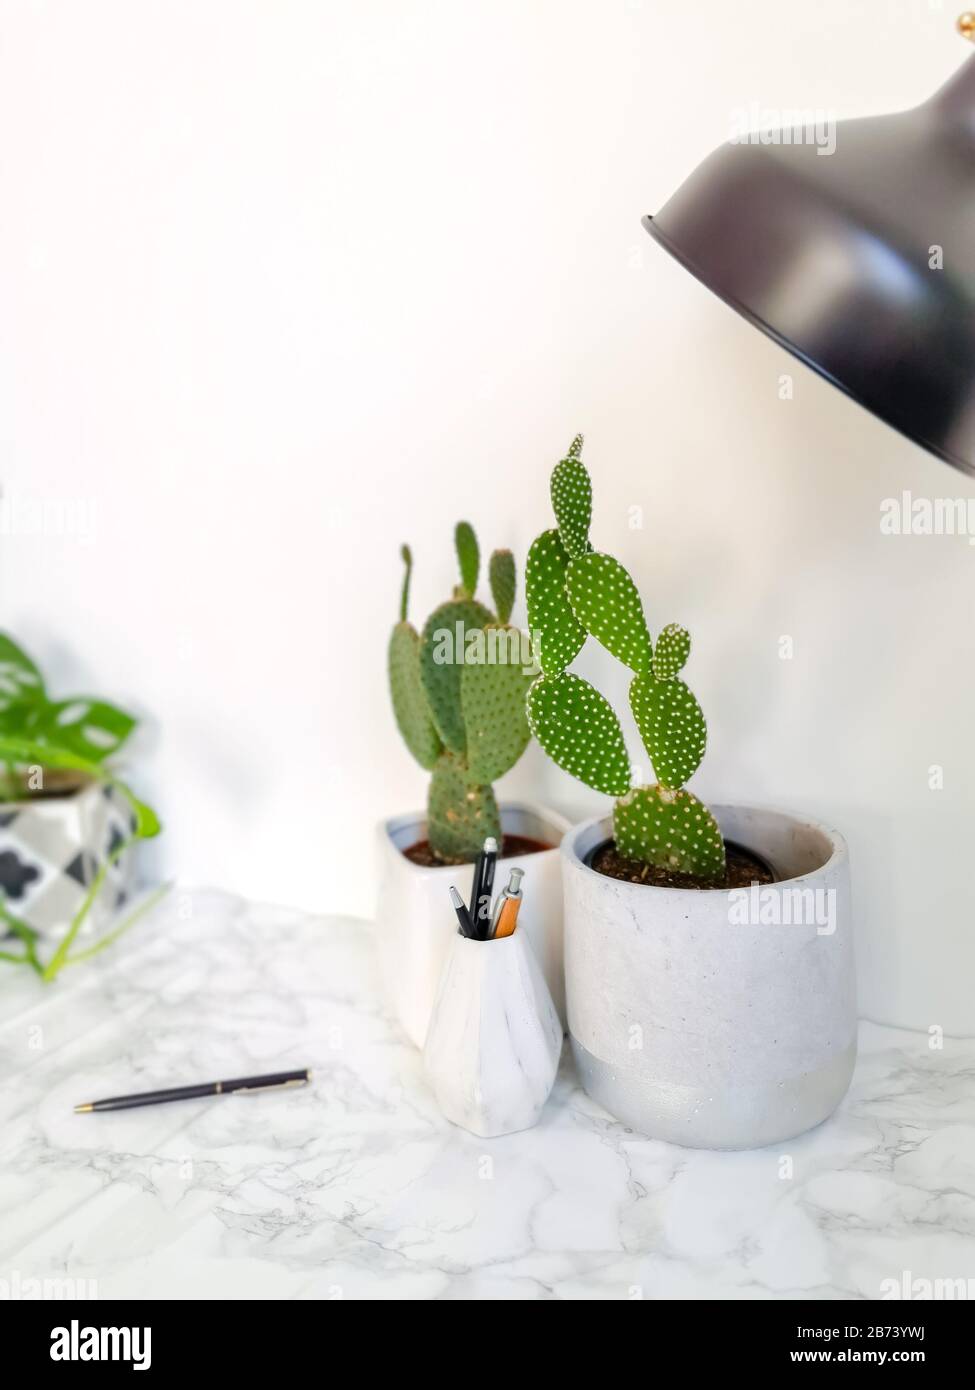 Weißer, sauberer Schreibtisch mit zahlreichen grünen Pflanzen für eine entspannende Arbeitsumgebung ohne Stress Stockfoto